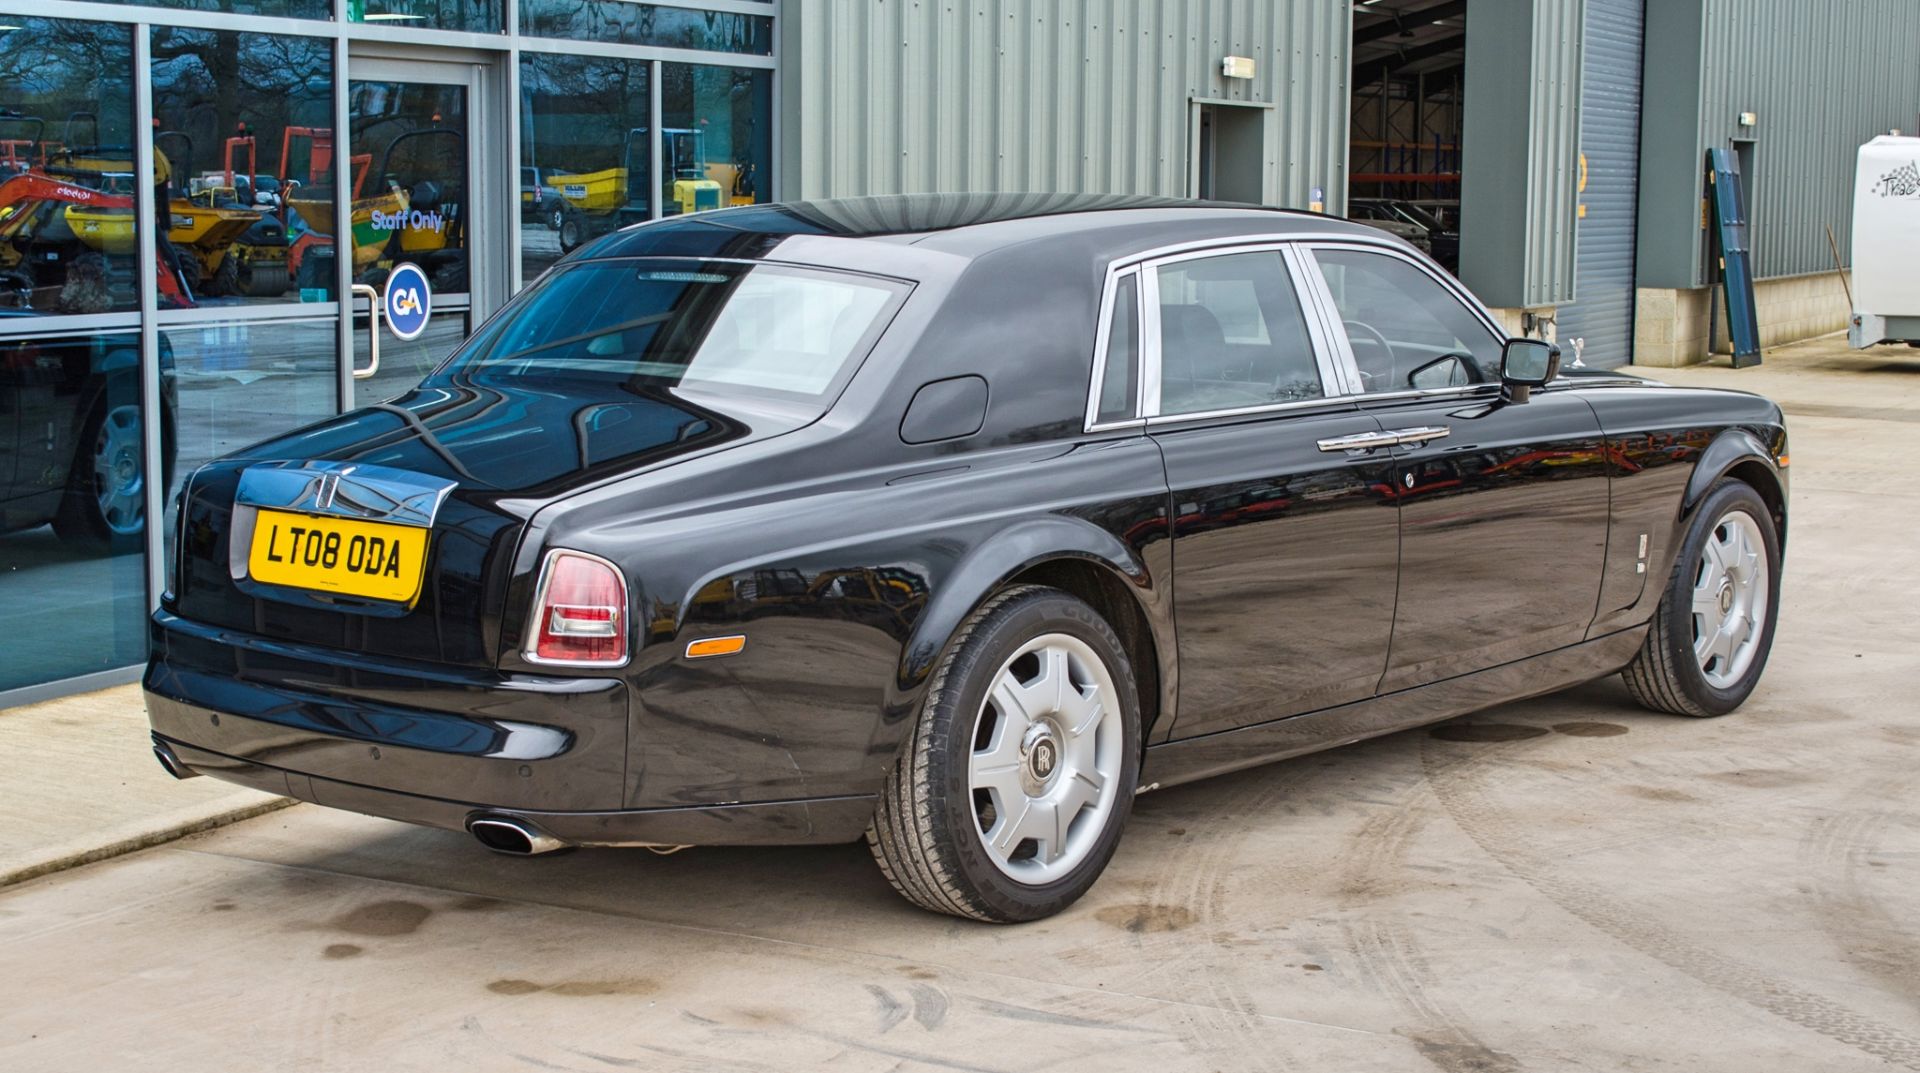 2008 Rolls Royce Phantom 6.75 litre V12 4 door saloon - Image 6 of 60